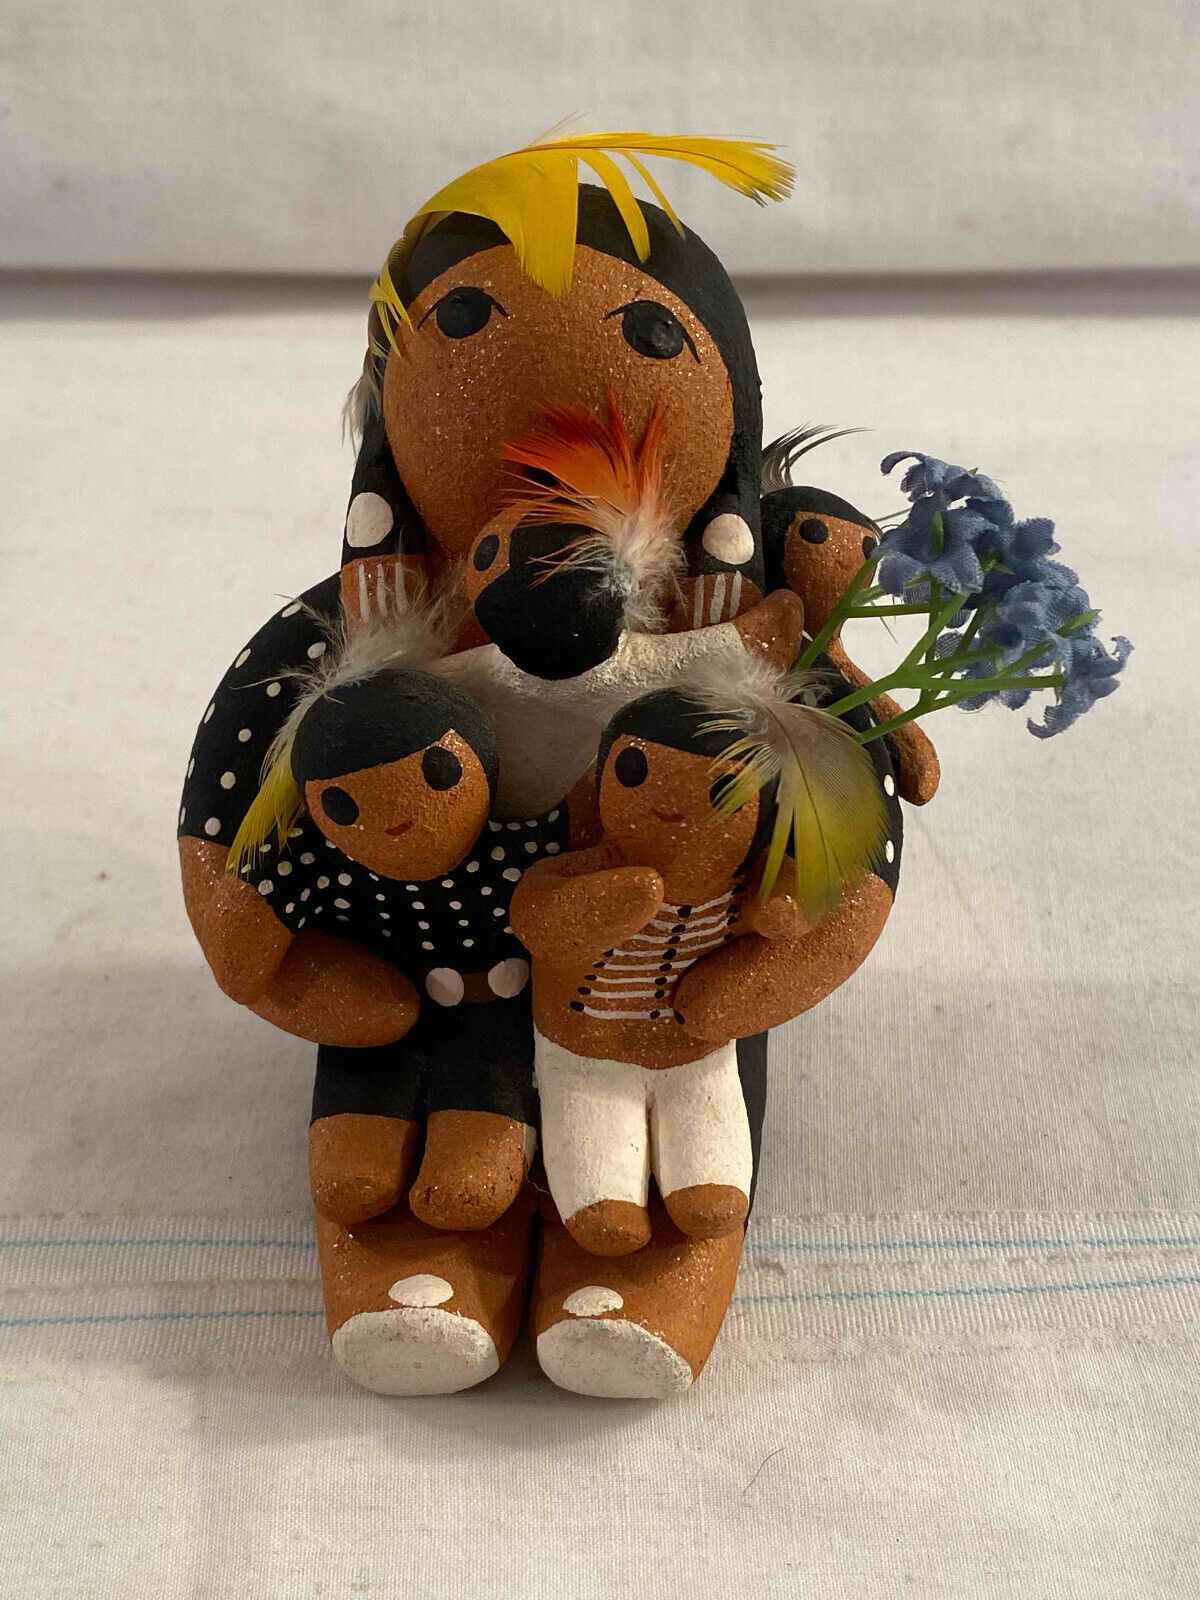 Quintana Signed Handmade Figure Woman + Children 